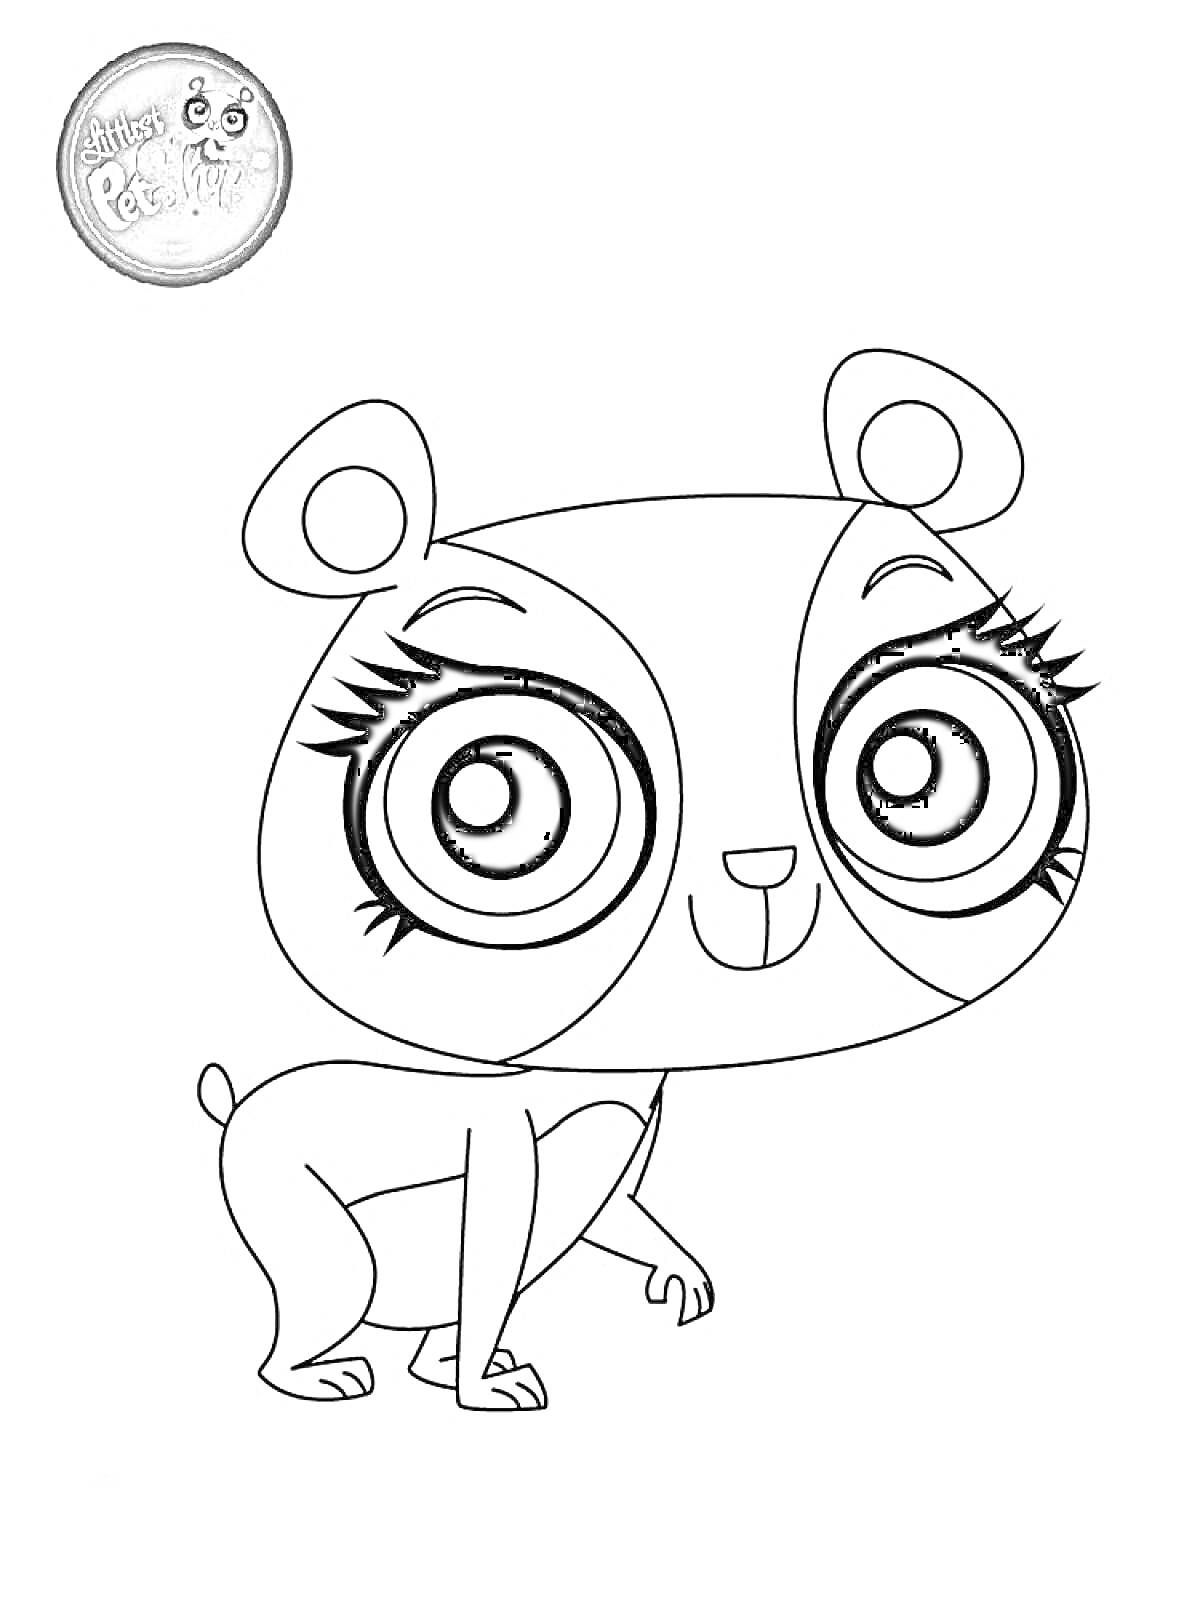 Раскраска Мультяшный персонаж - панда из 